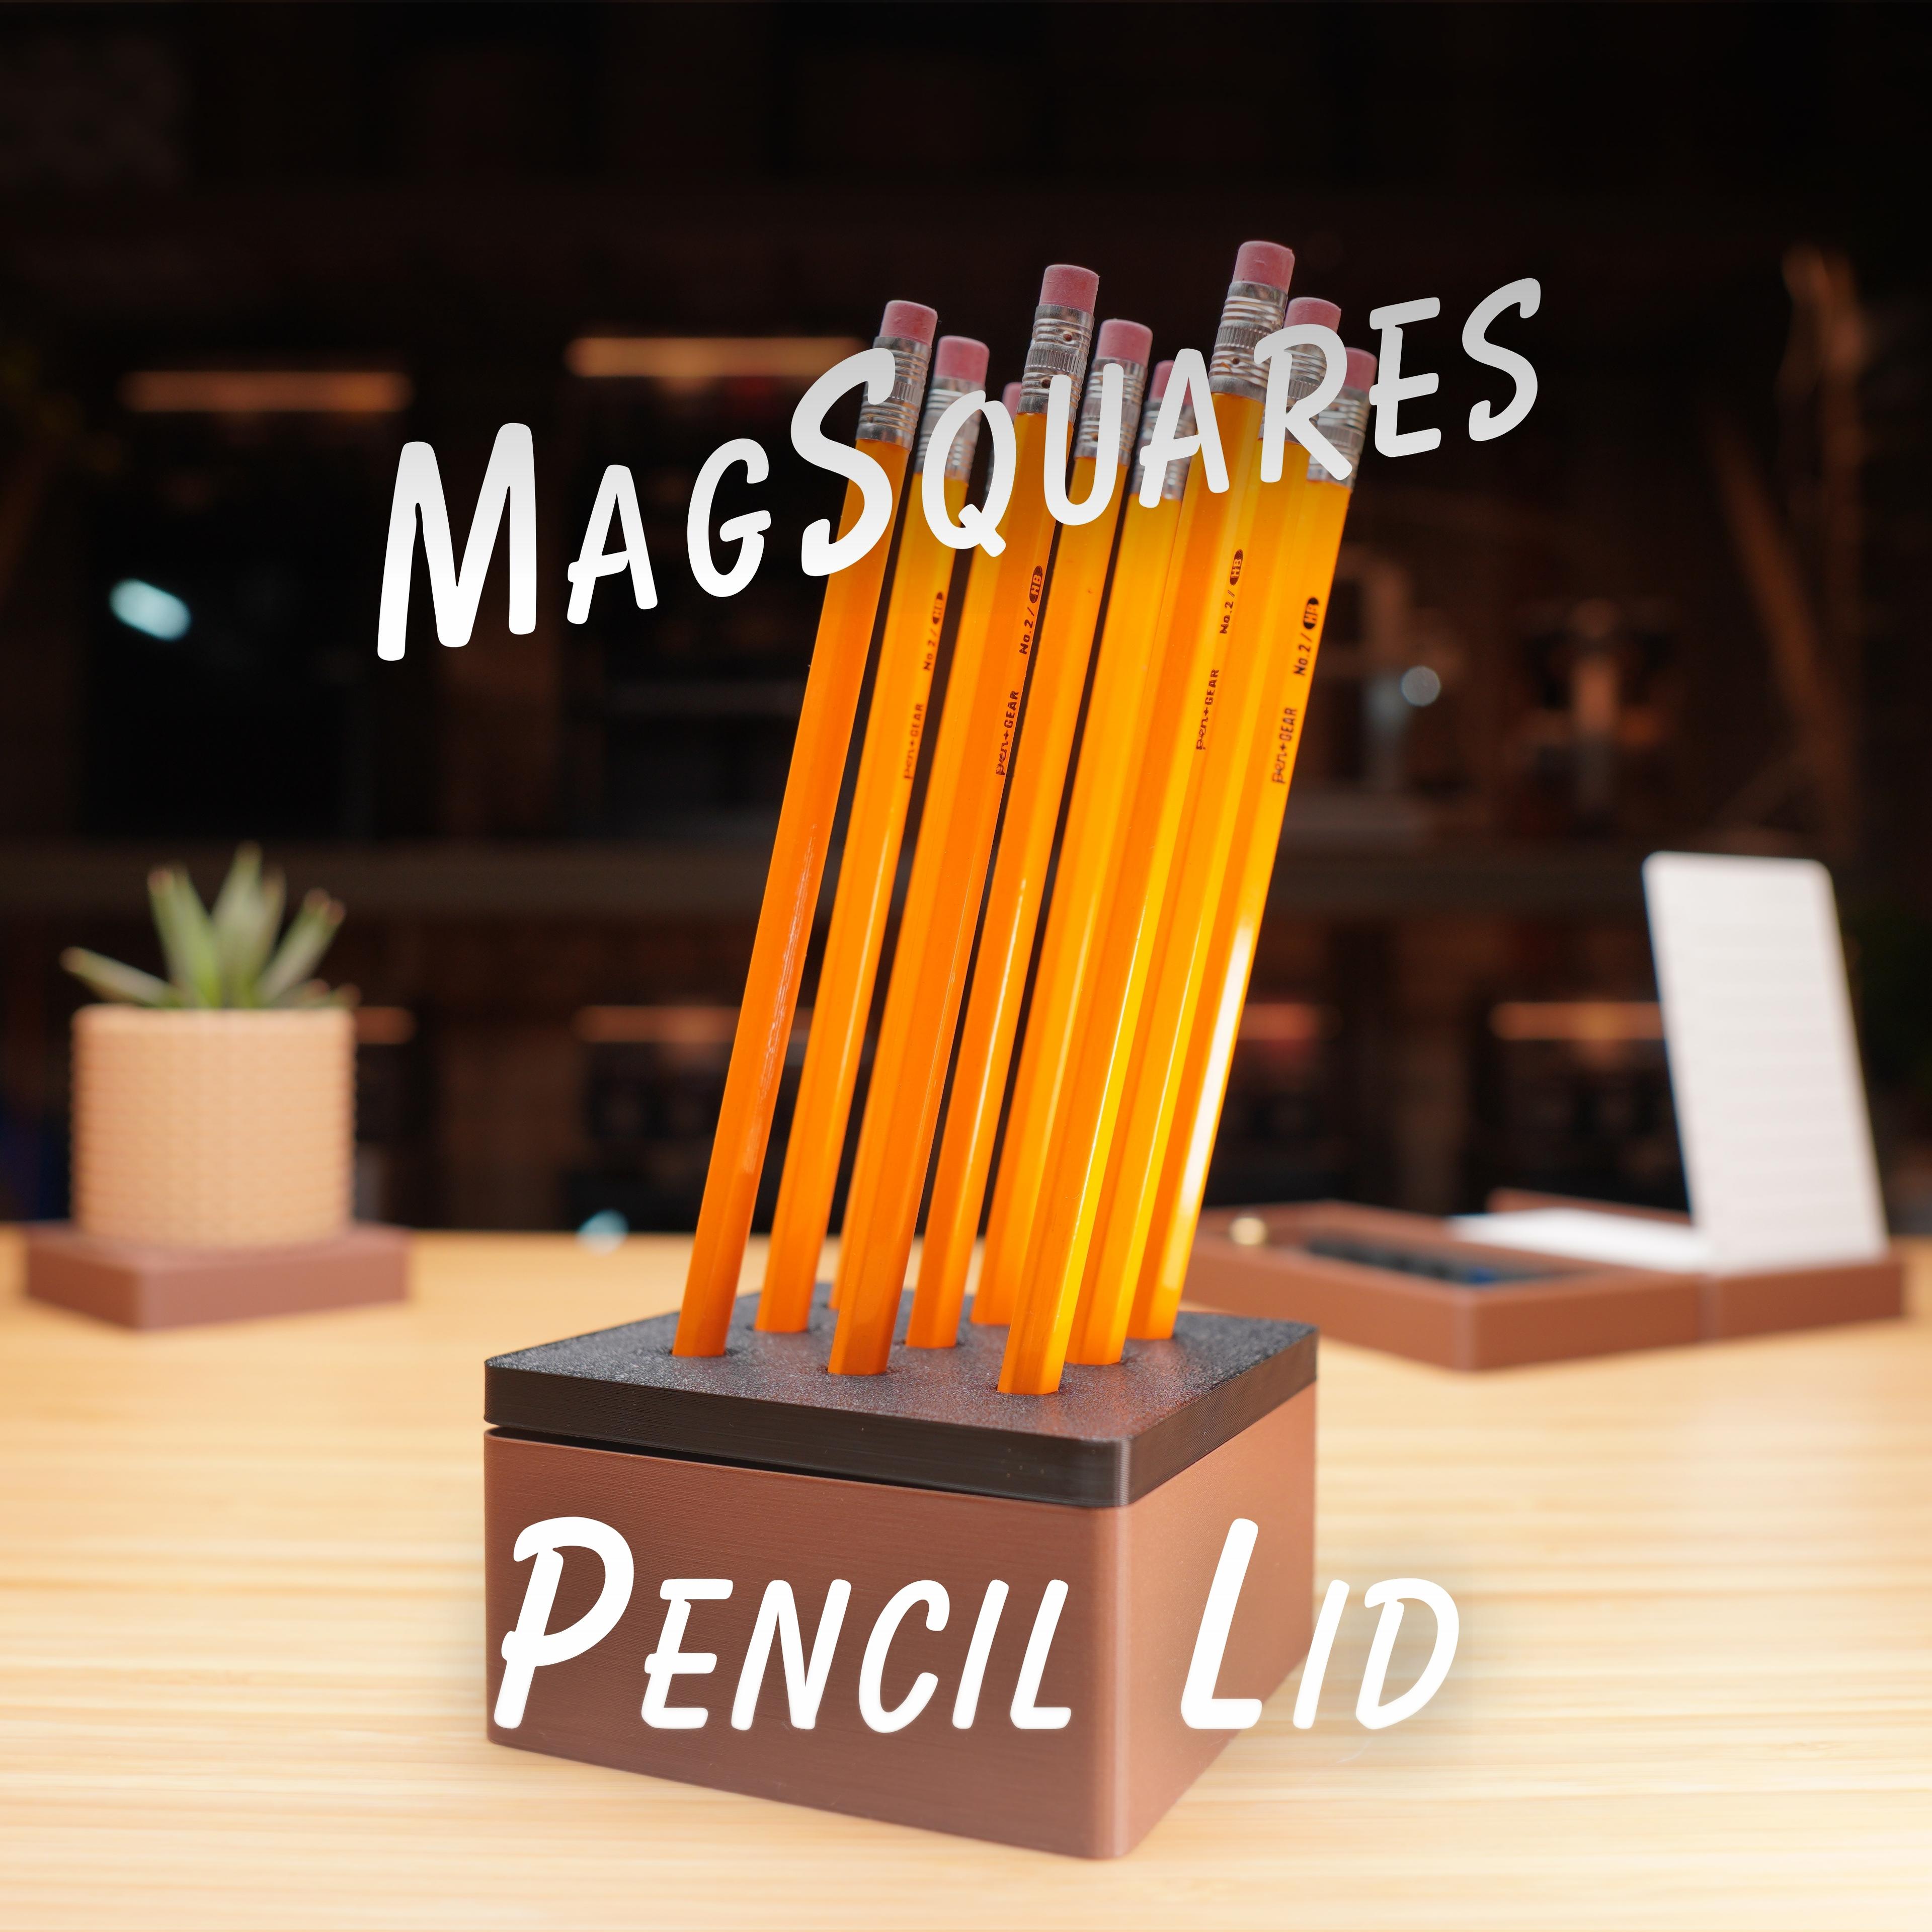 1x1 Pencil Lid - MagSquares 3d model